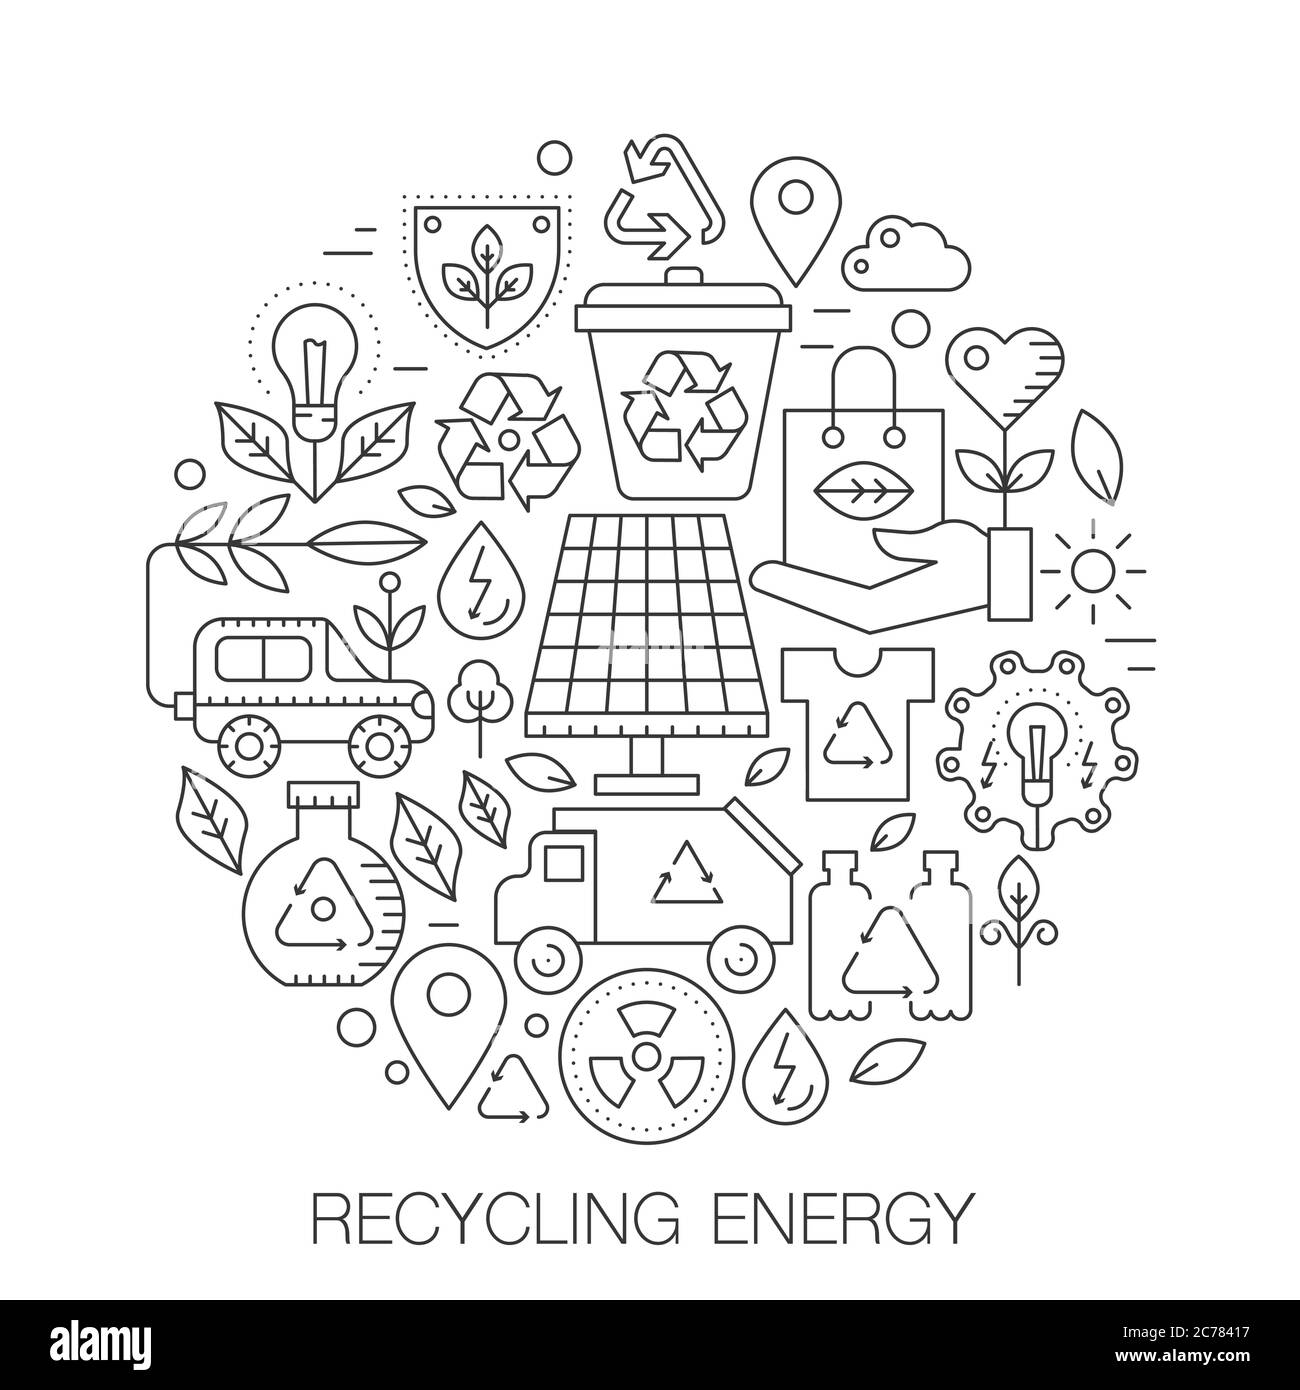 Riciclaggio dell'energia in cerchio - illustrazione della linea di concetto per copertina, emblema, badge. Riciclaggio di energia verde sottile linee stroke icone. Illustrazione Vettoriale